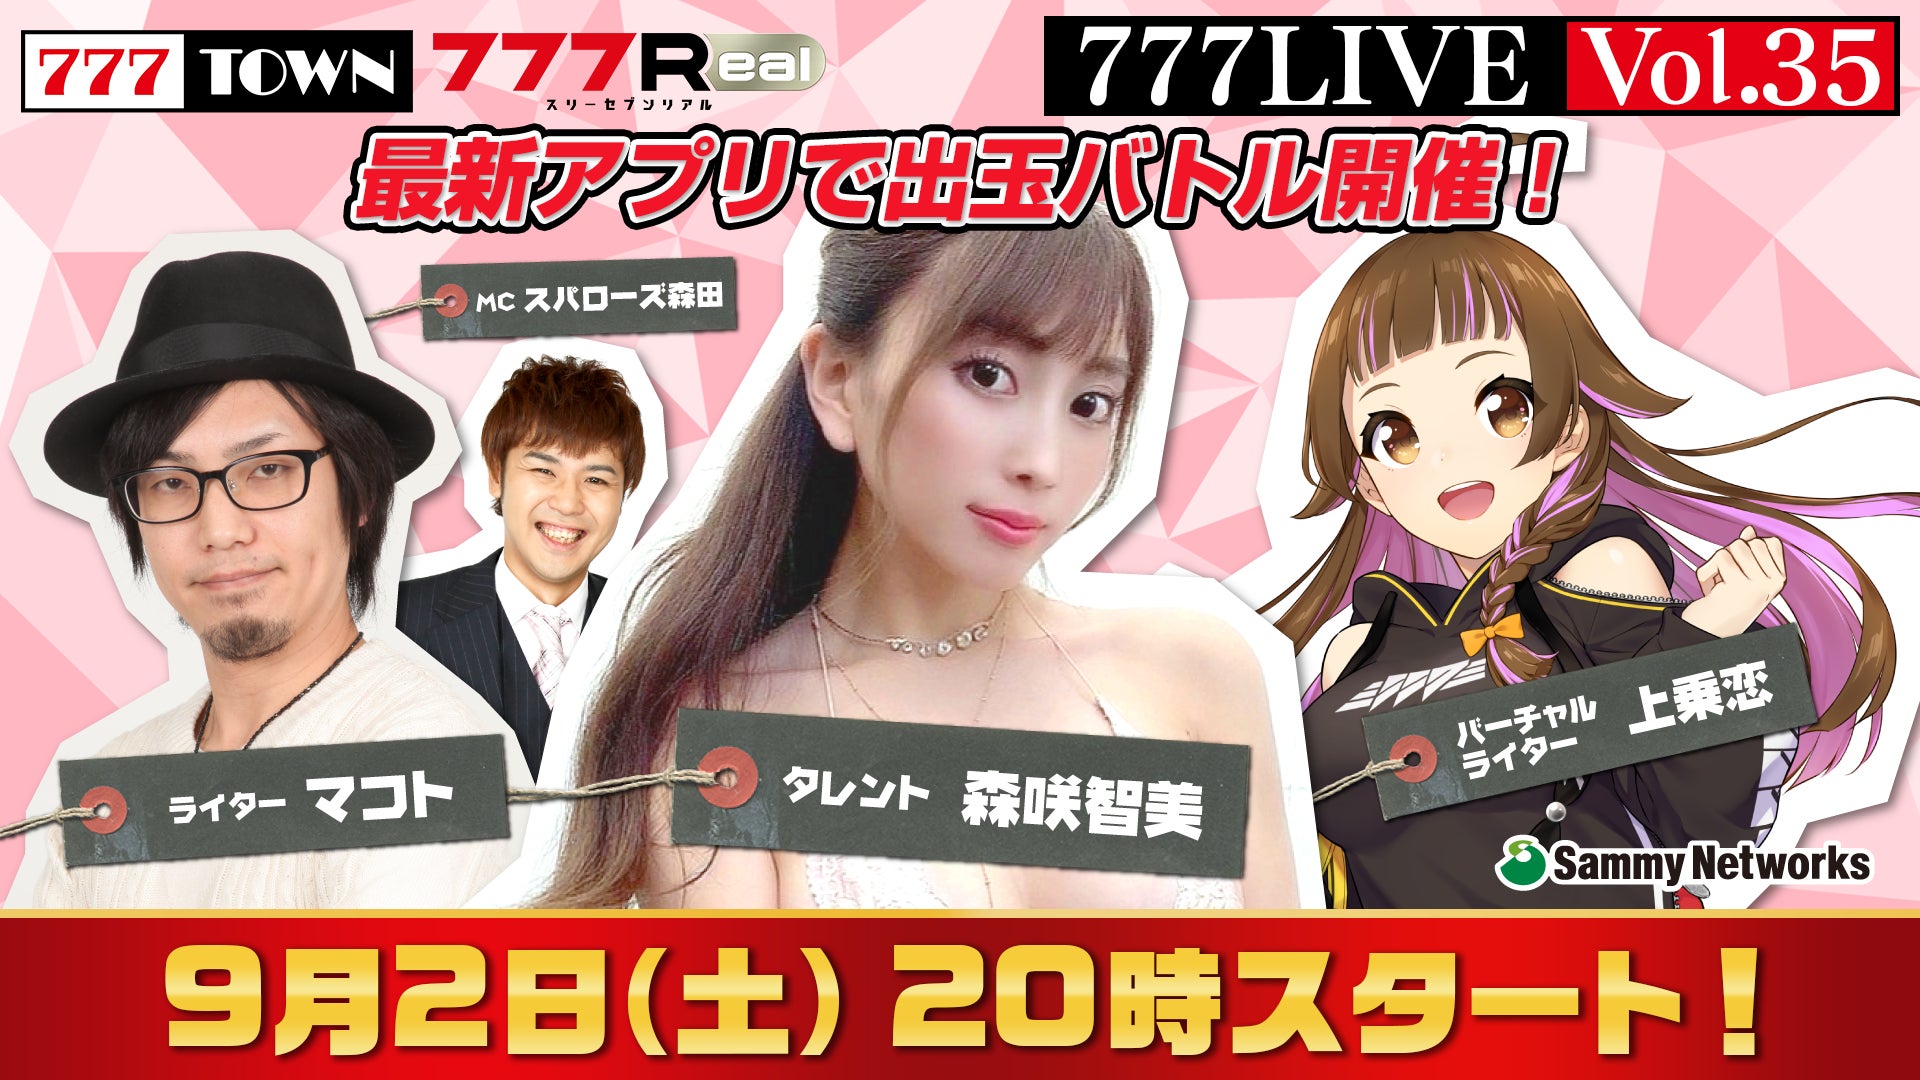 森咲智美、マコトがゲスト出演！9月2日（土）20時から「777LIVE Vol.35」生放送